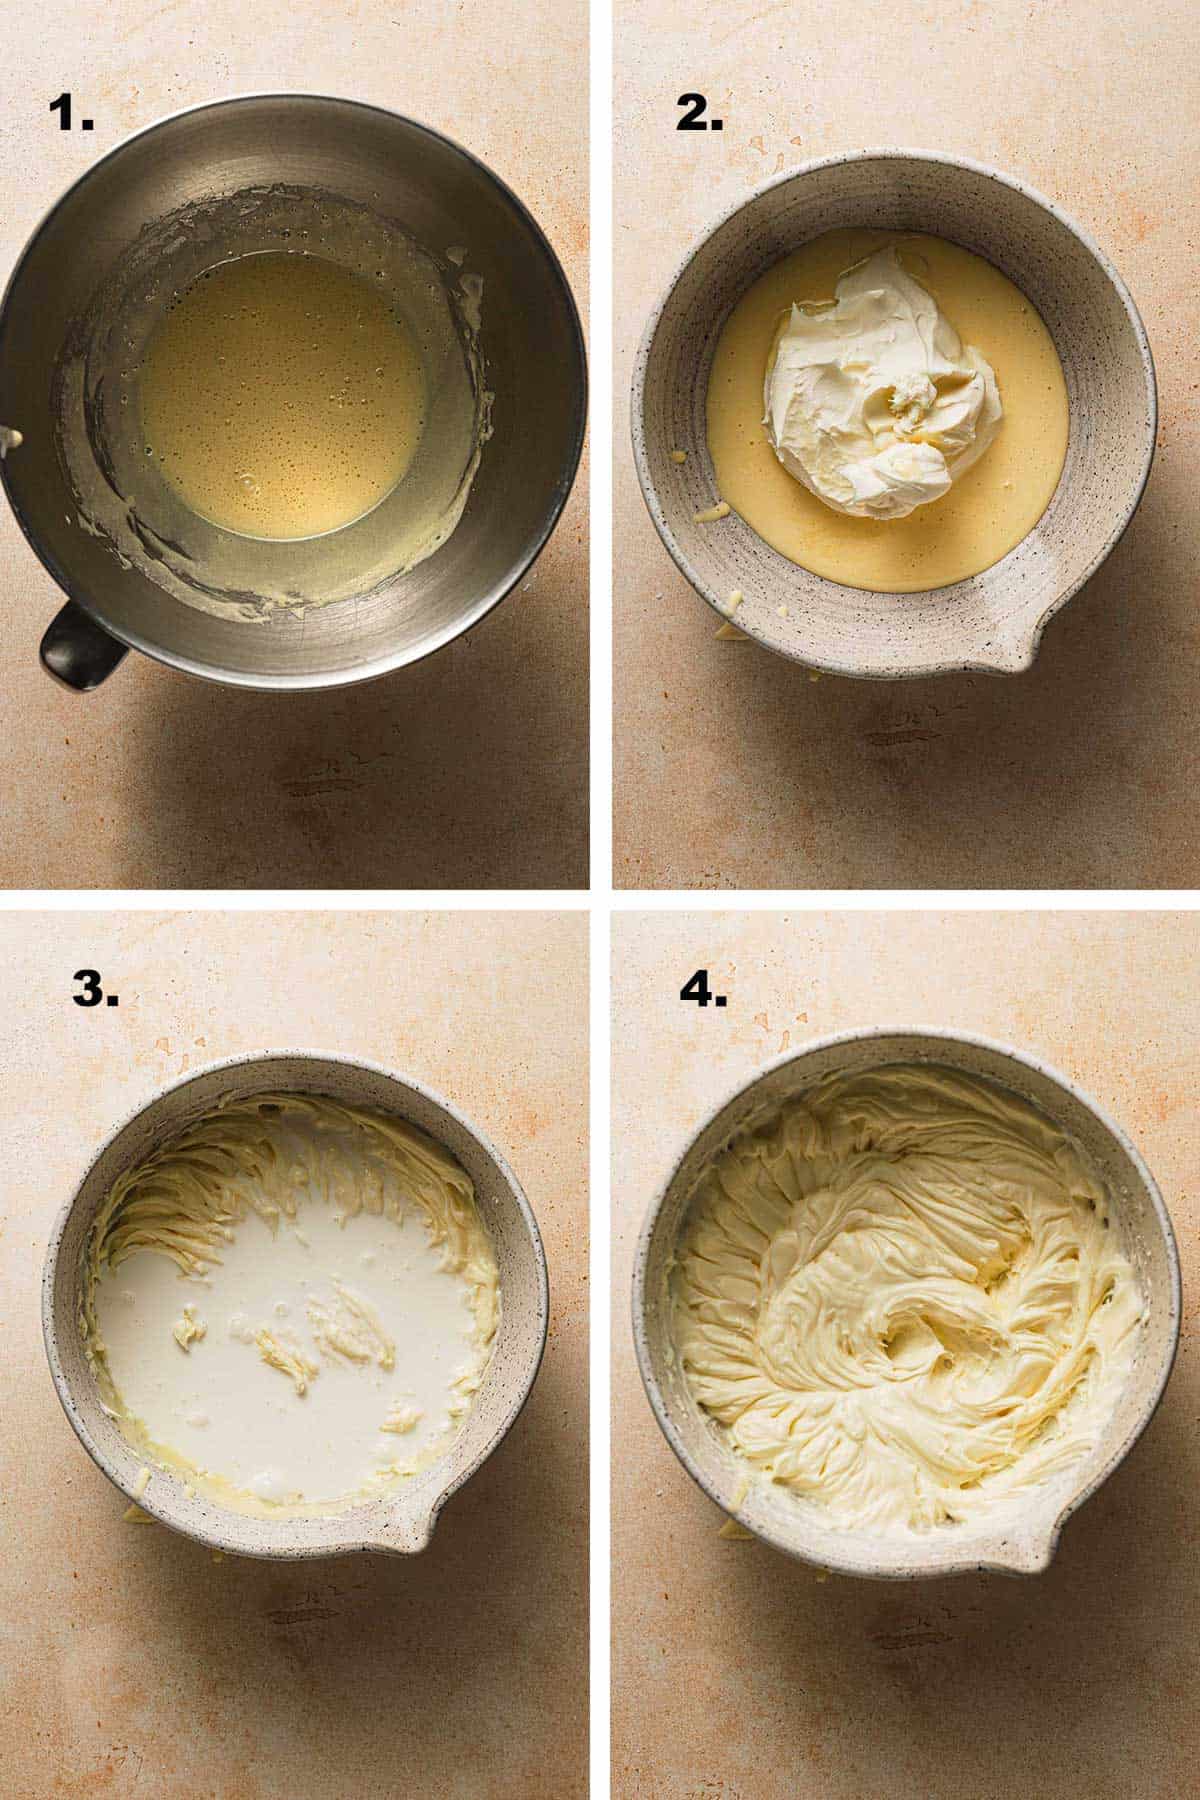 Steps for making mascarpone filling for dessert.